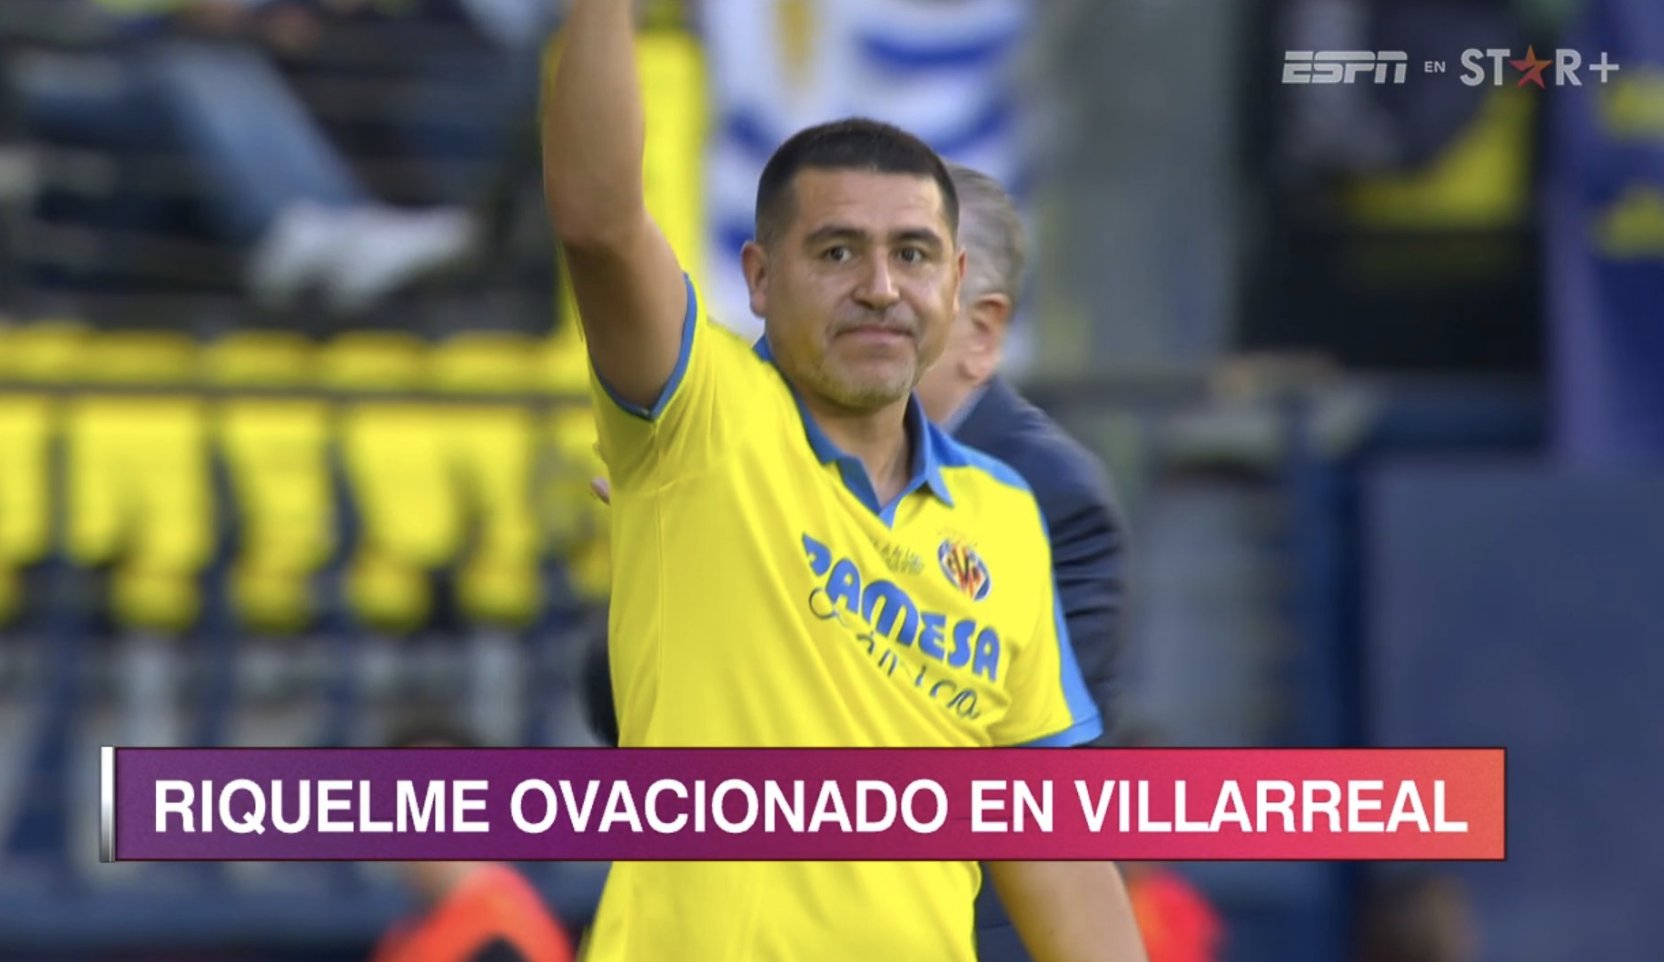 “Uno de los mejores jugadores de la historia del fútbol”: la impactante ovación a Riquelme en el partido de leyendas del Villarreal